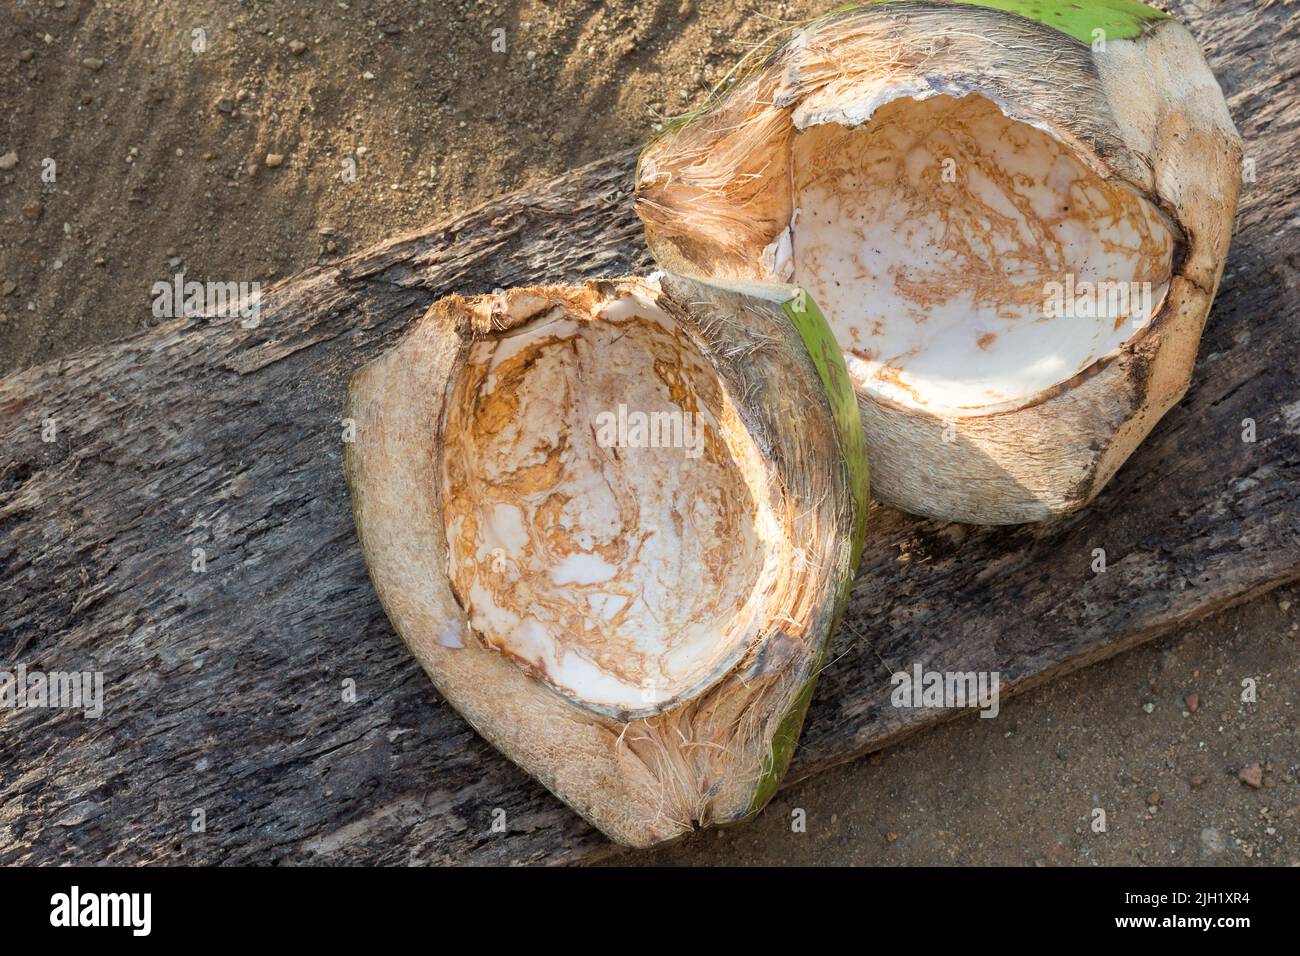 Kokospalmen oder Kokokerguss, die unter der Sonne trocknen, auch Kokosfaser genannt, äußere Kokosnussschale, von oben mit Platz für Text aufgenommen Stockfoto